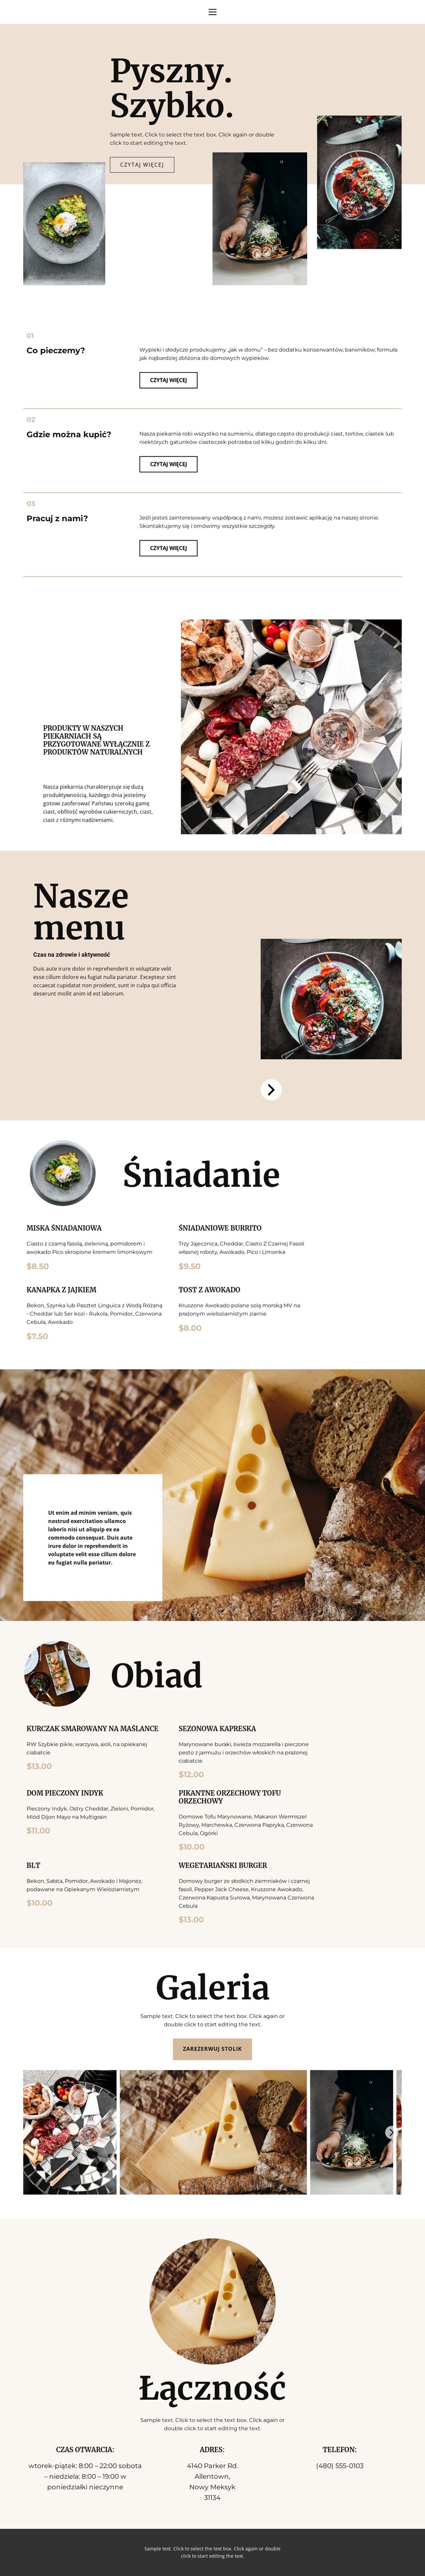 Nowa restauracja Szablon witryny sieci Web